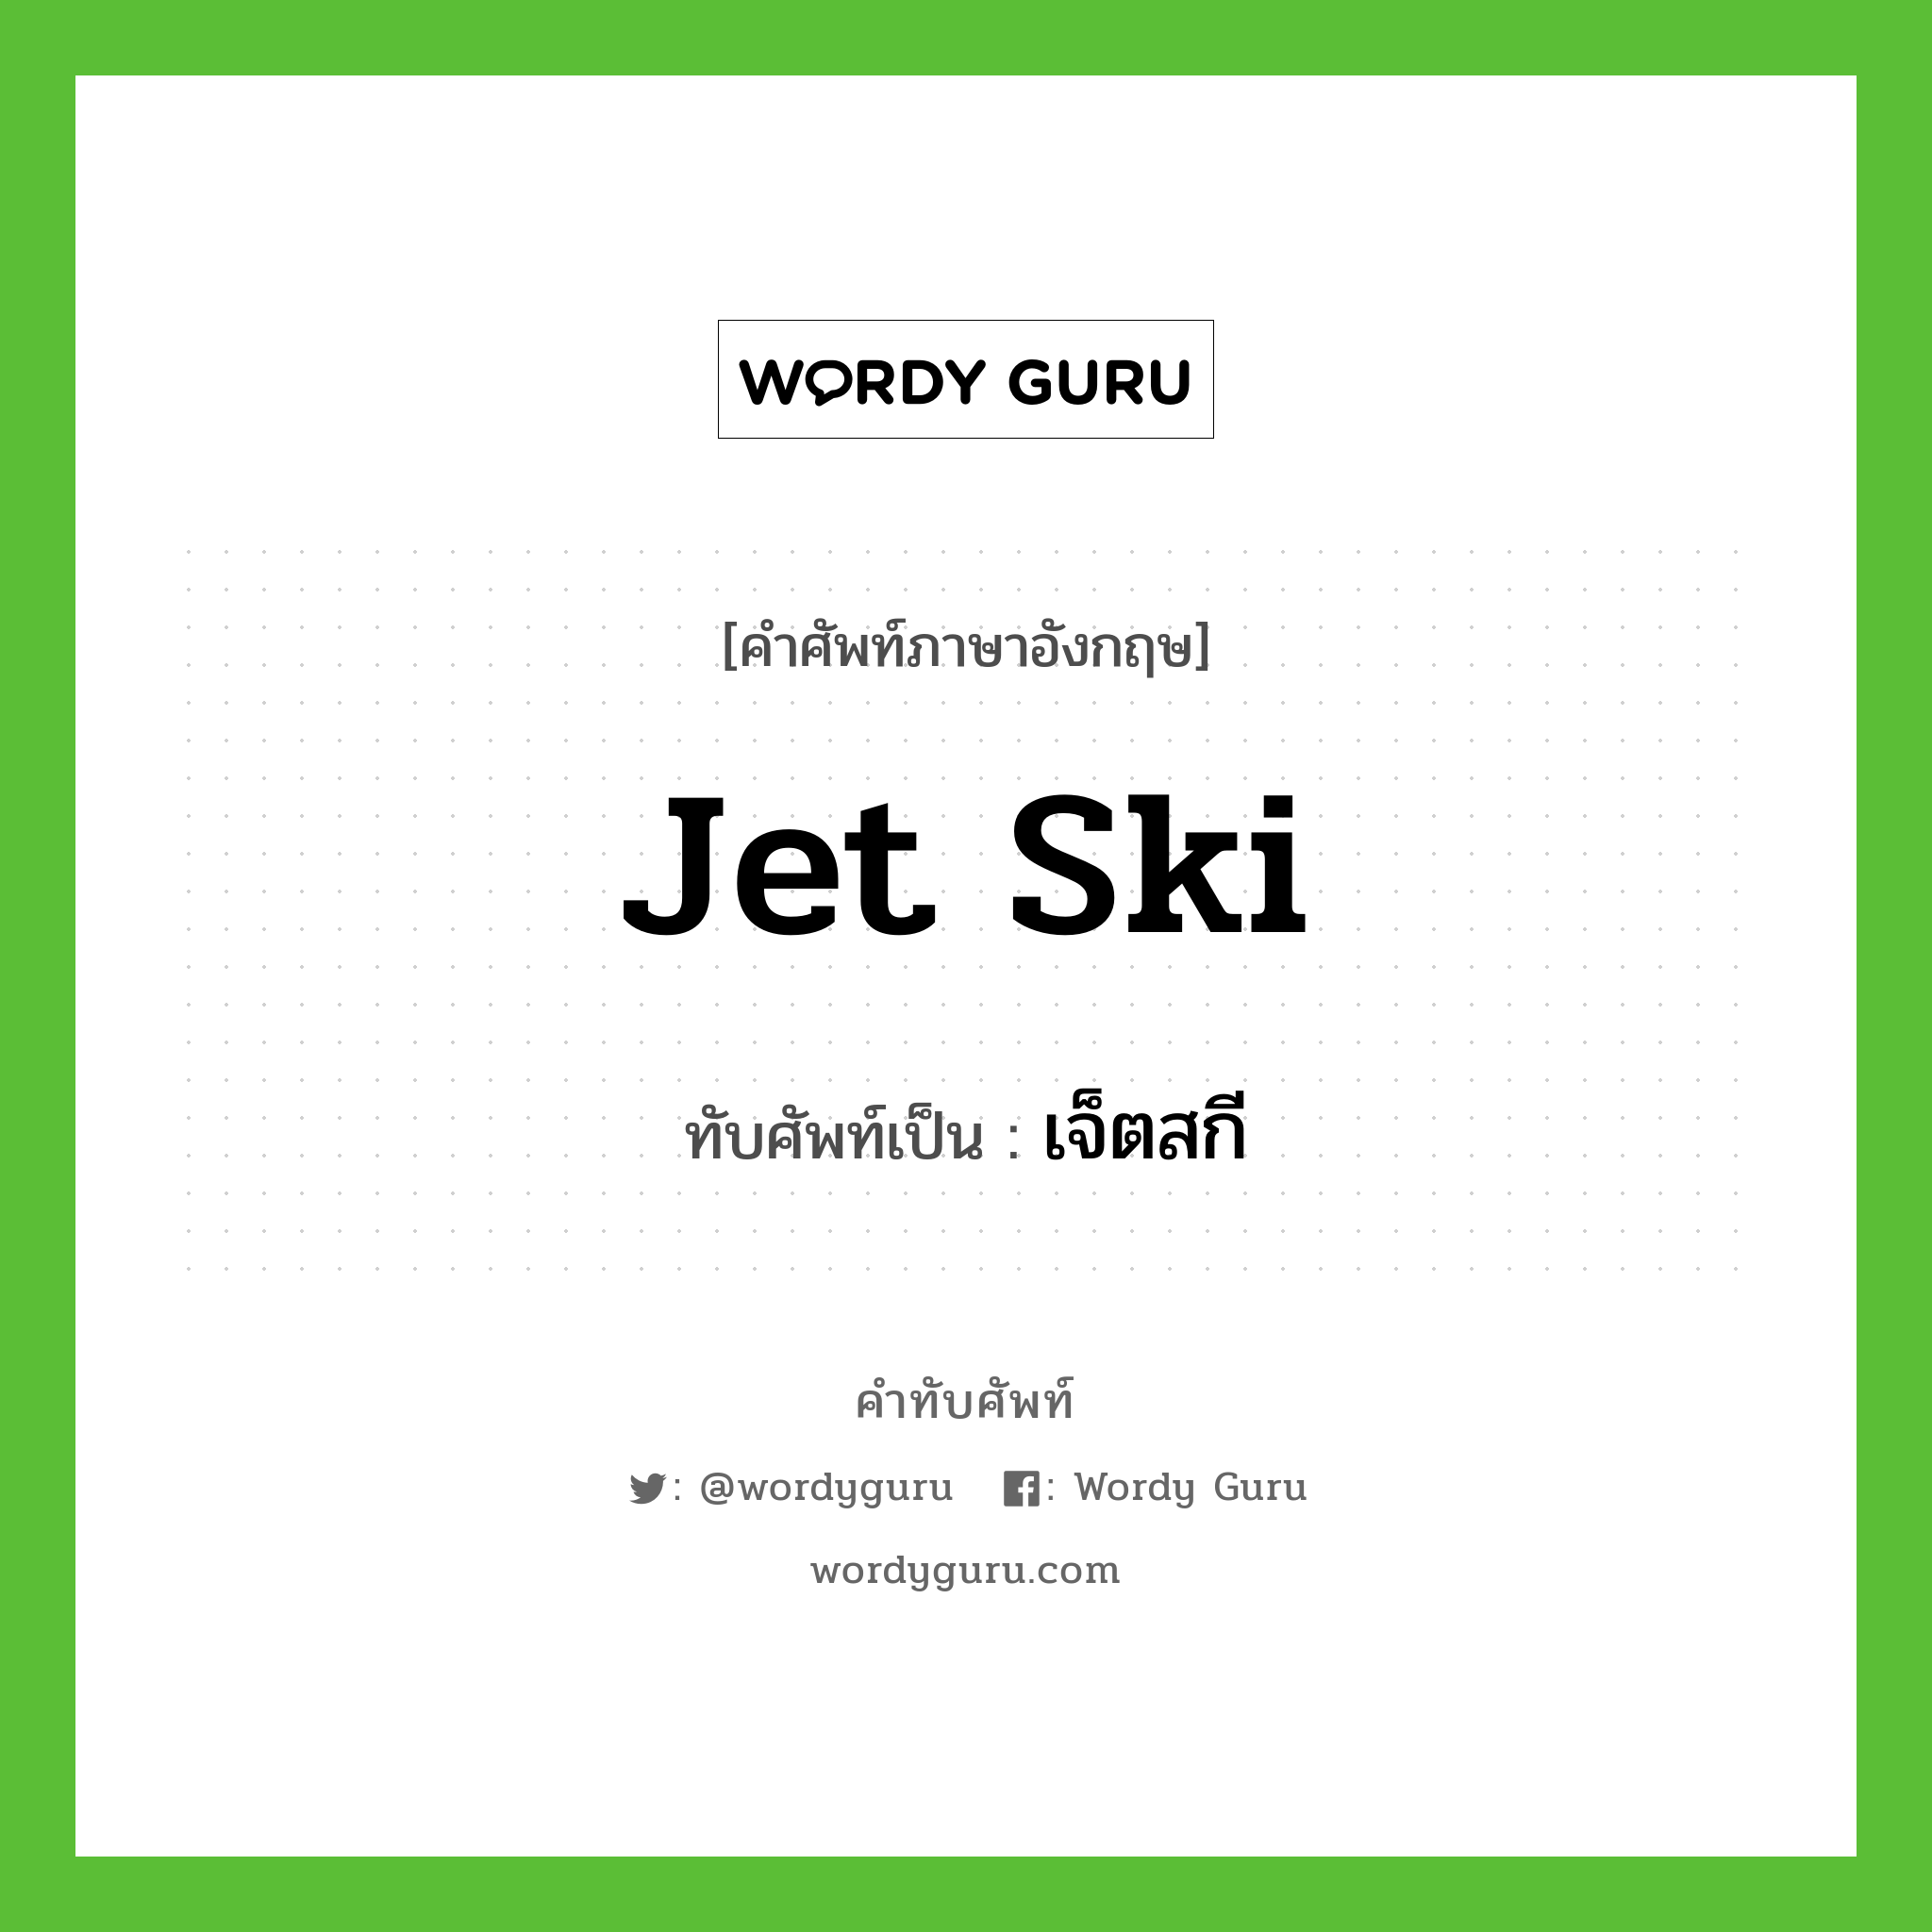 Jet ski เขียนเป็นคำไทยว่าอะไร?, คำศัพท์ภาษาอังกฤษ Jet ski ทับศัพท์เป็น เจ็ตสกี